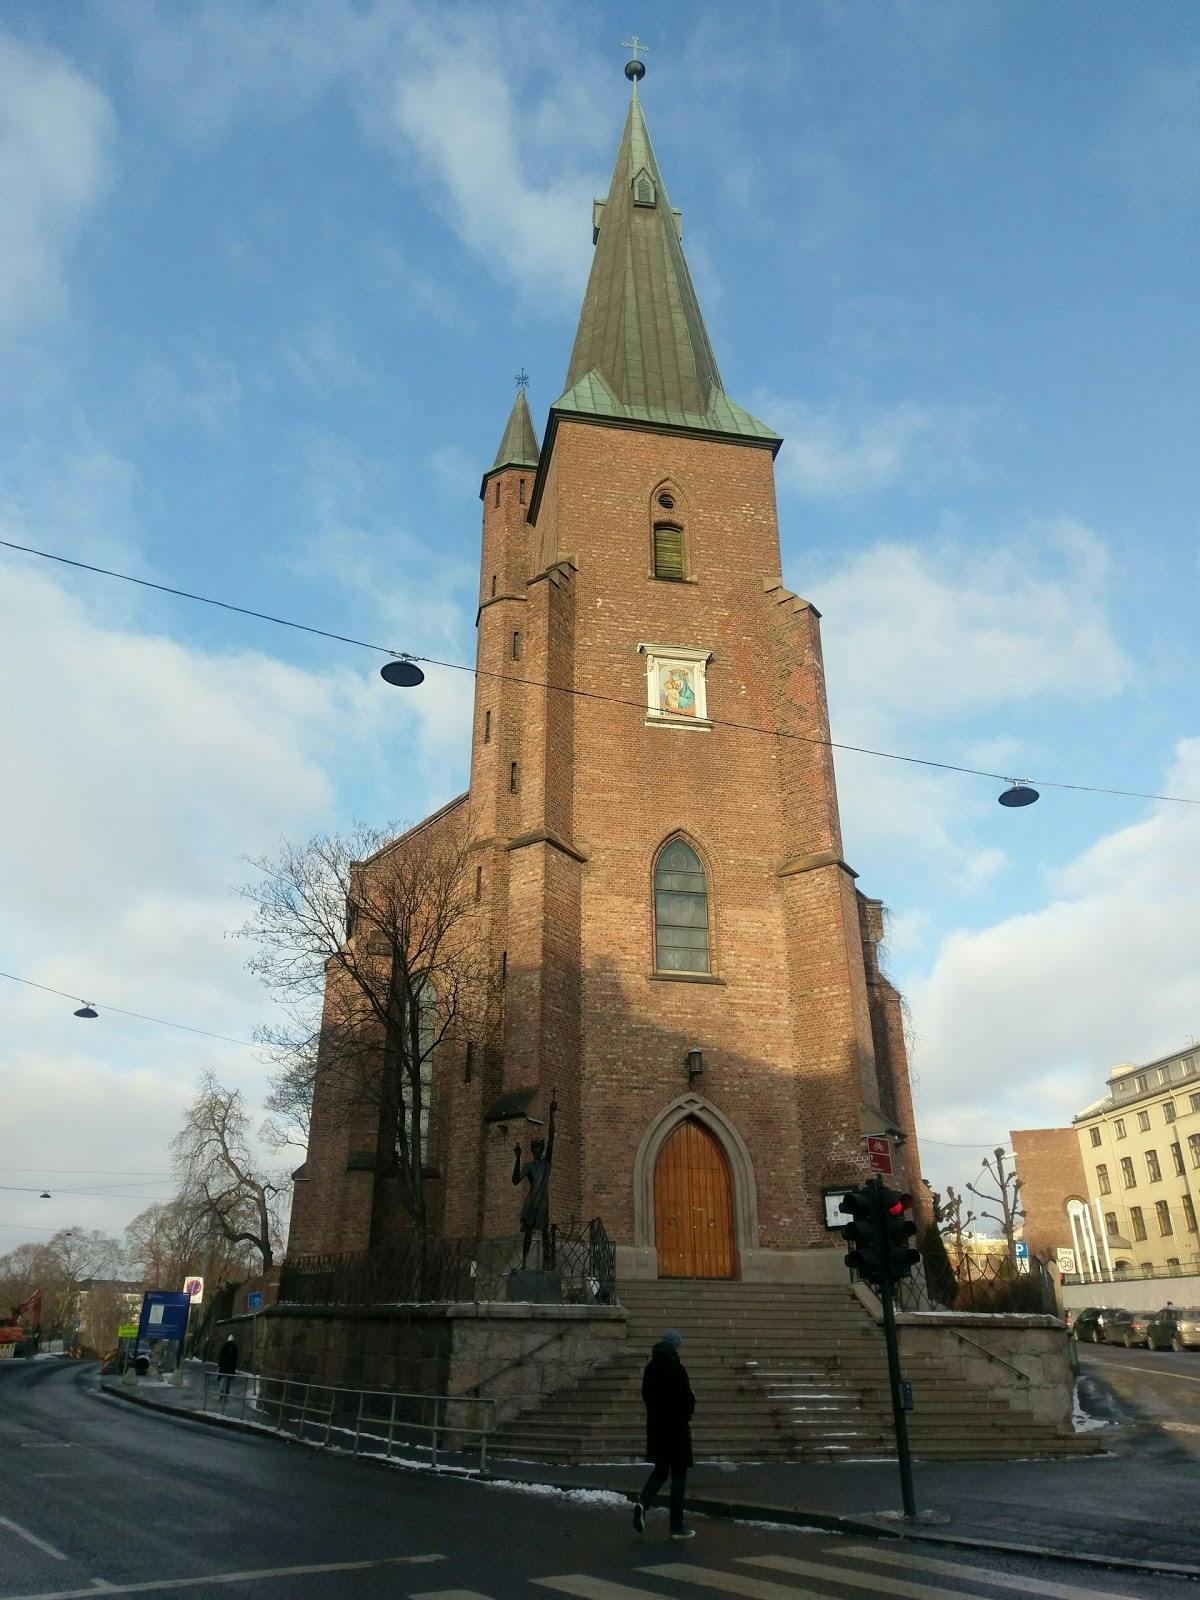 Image - St. Hanshaugen